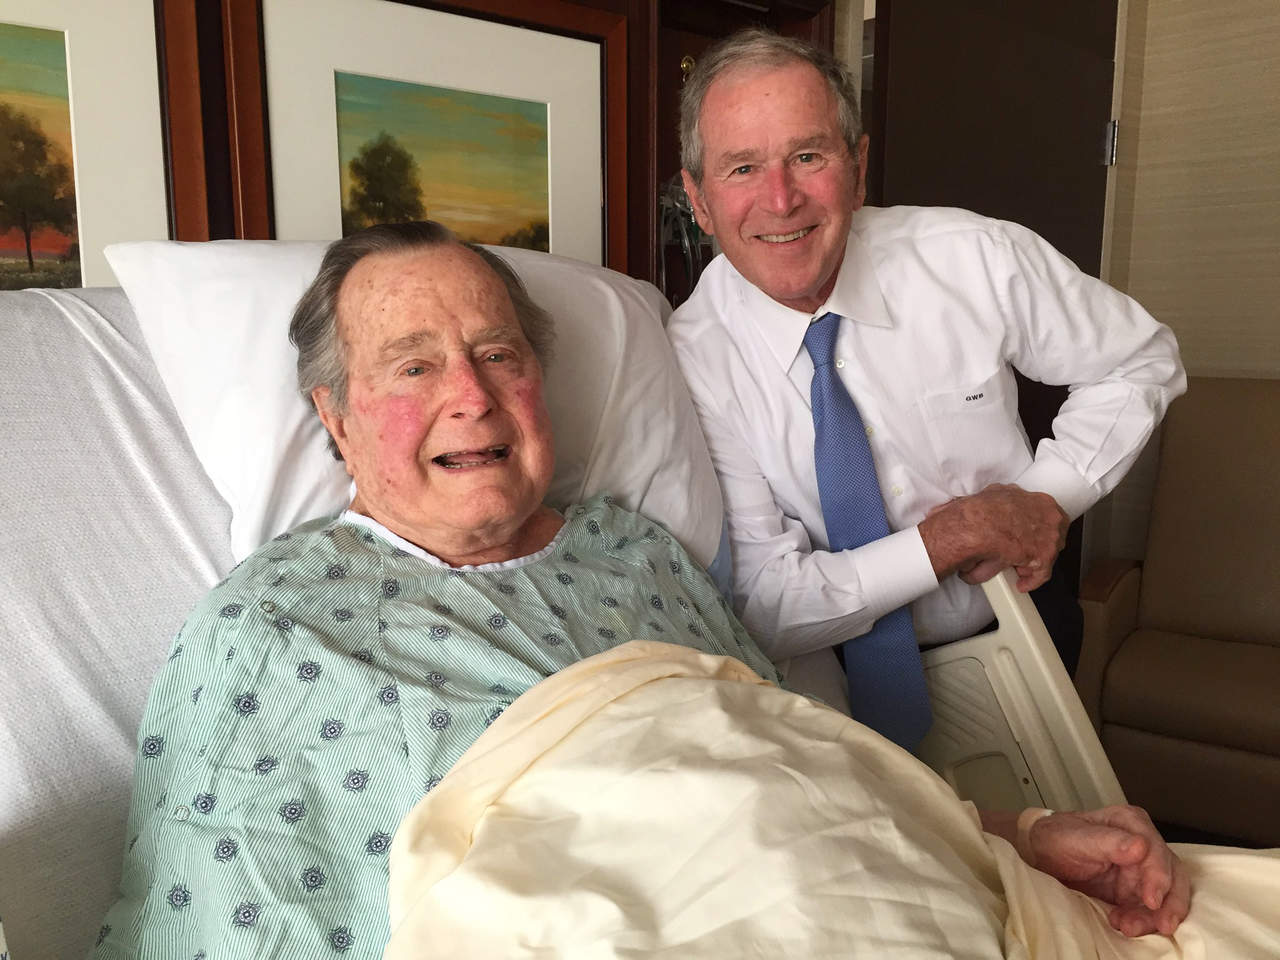 El neumólogo indicó además que una vez Bush, de 92 años, esté en casa, recibirá tratamientos respiratorios 'agresivos' para ayudar a minimizar los efectos de la bronquitis crónica que sufre. (ARCHIVO)